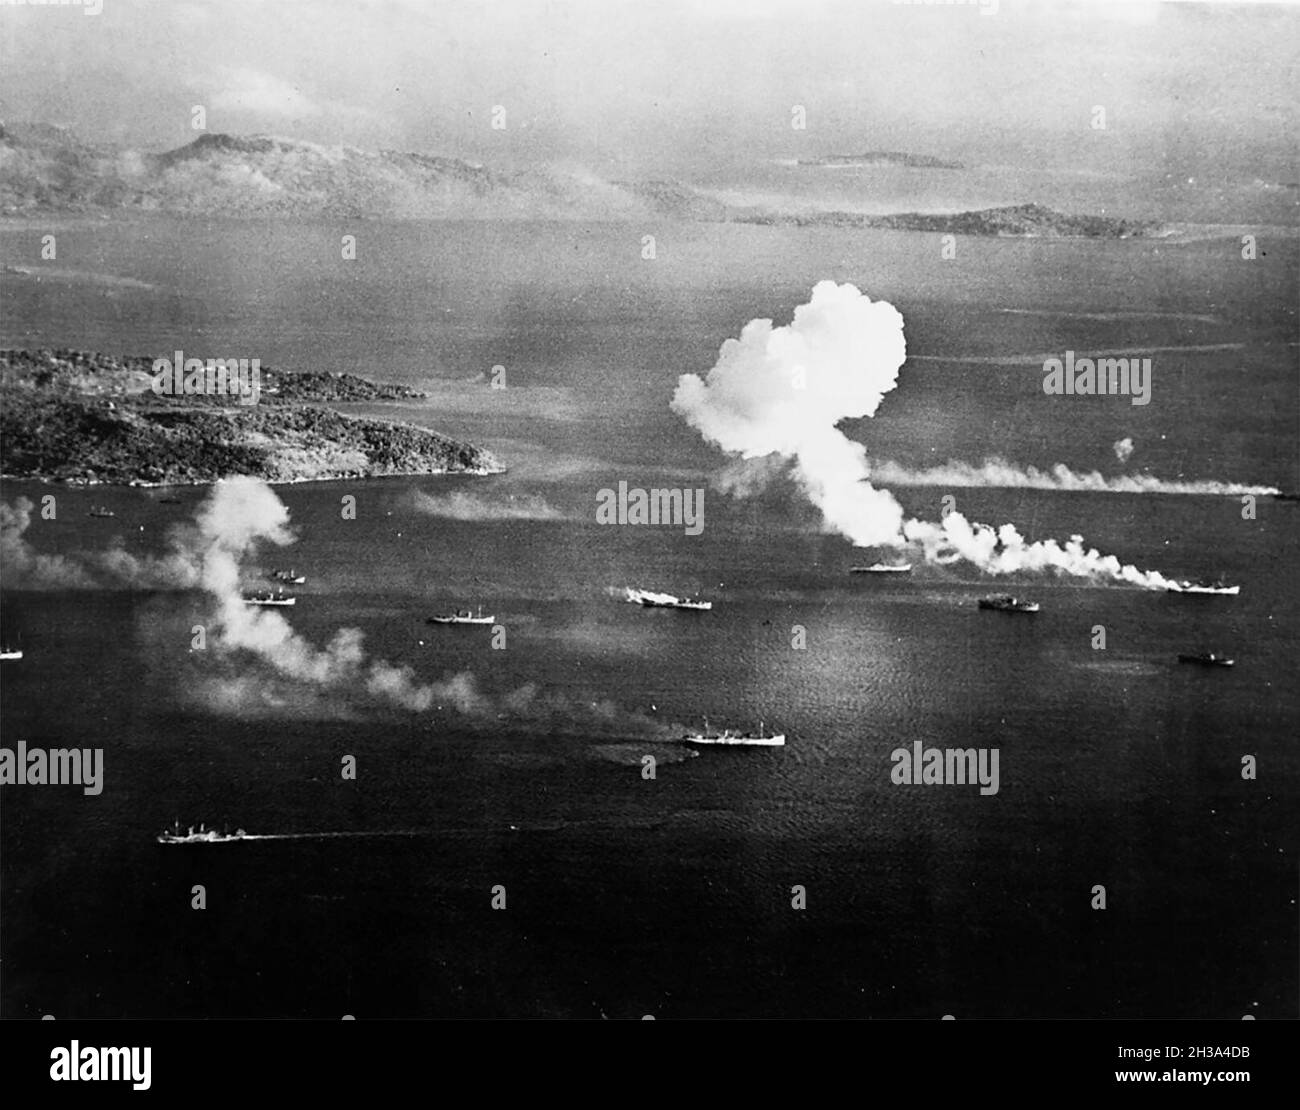 Japanische Schifffahrt unter Luftangriff in Truk Lagoon, wie von einem USS Intrepid (CV-11) Flugzeug am ersten Tag der Überfälle gesehen, 17. Februar 1944. Dublon Island ist links, mit Moen Island im Hintergrund. Vier dieser Schiffe scheinen bis zu diesem Zeitpunkt getroffen worden zu sein. Stockfoto